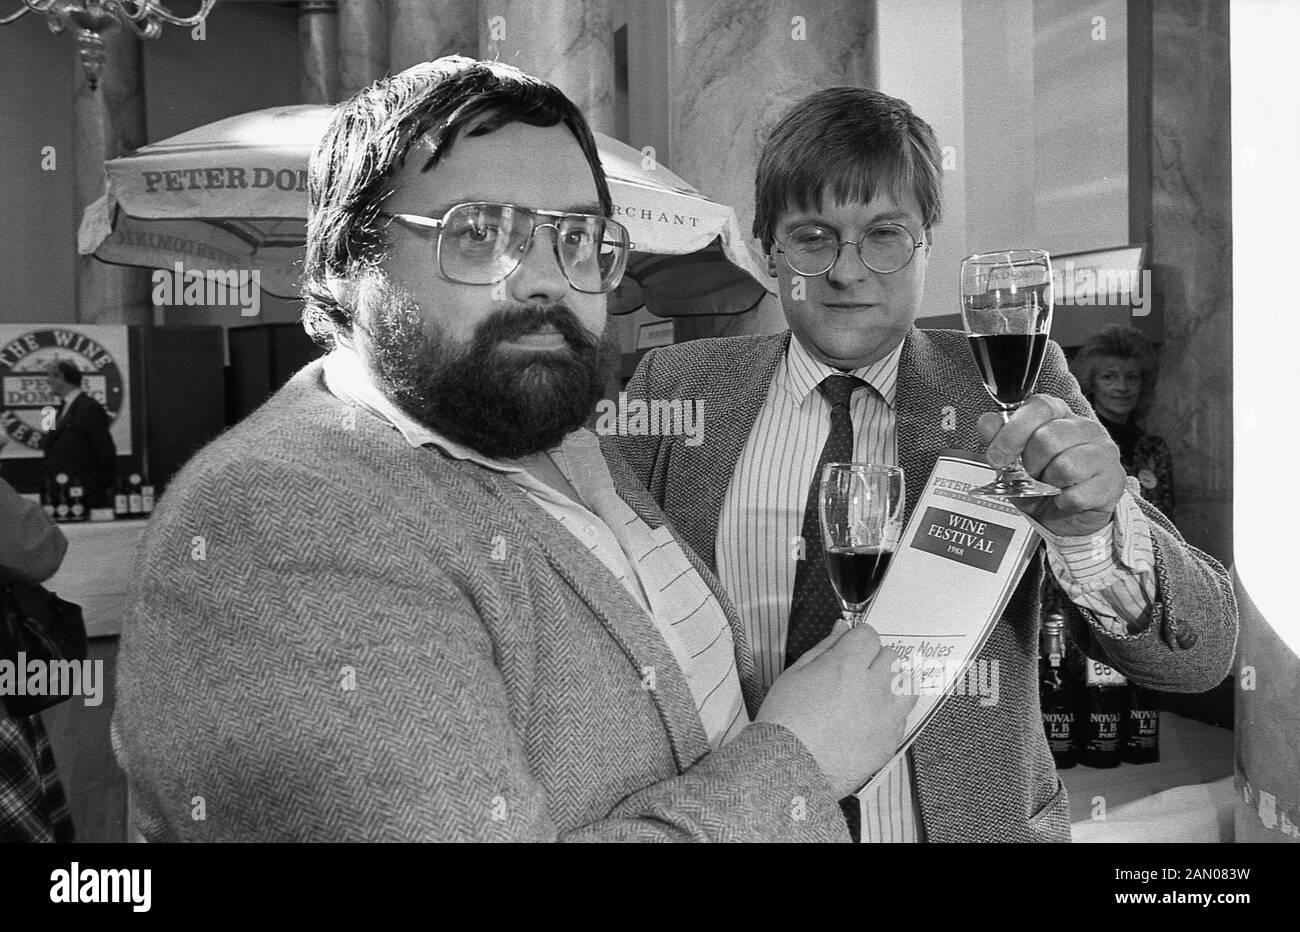 1988, historiques, deux hommes tenant des verres de vin rouge à l'intérieur d'un hall à un festival du vin, England, UK. Banque D'Images